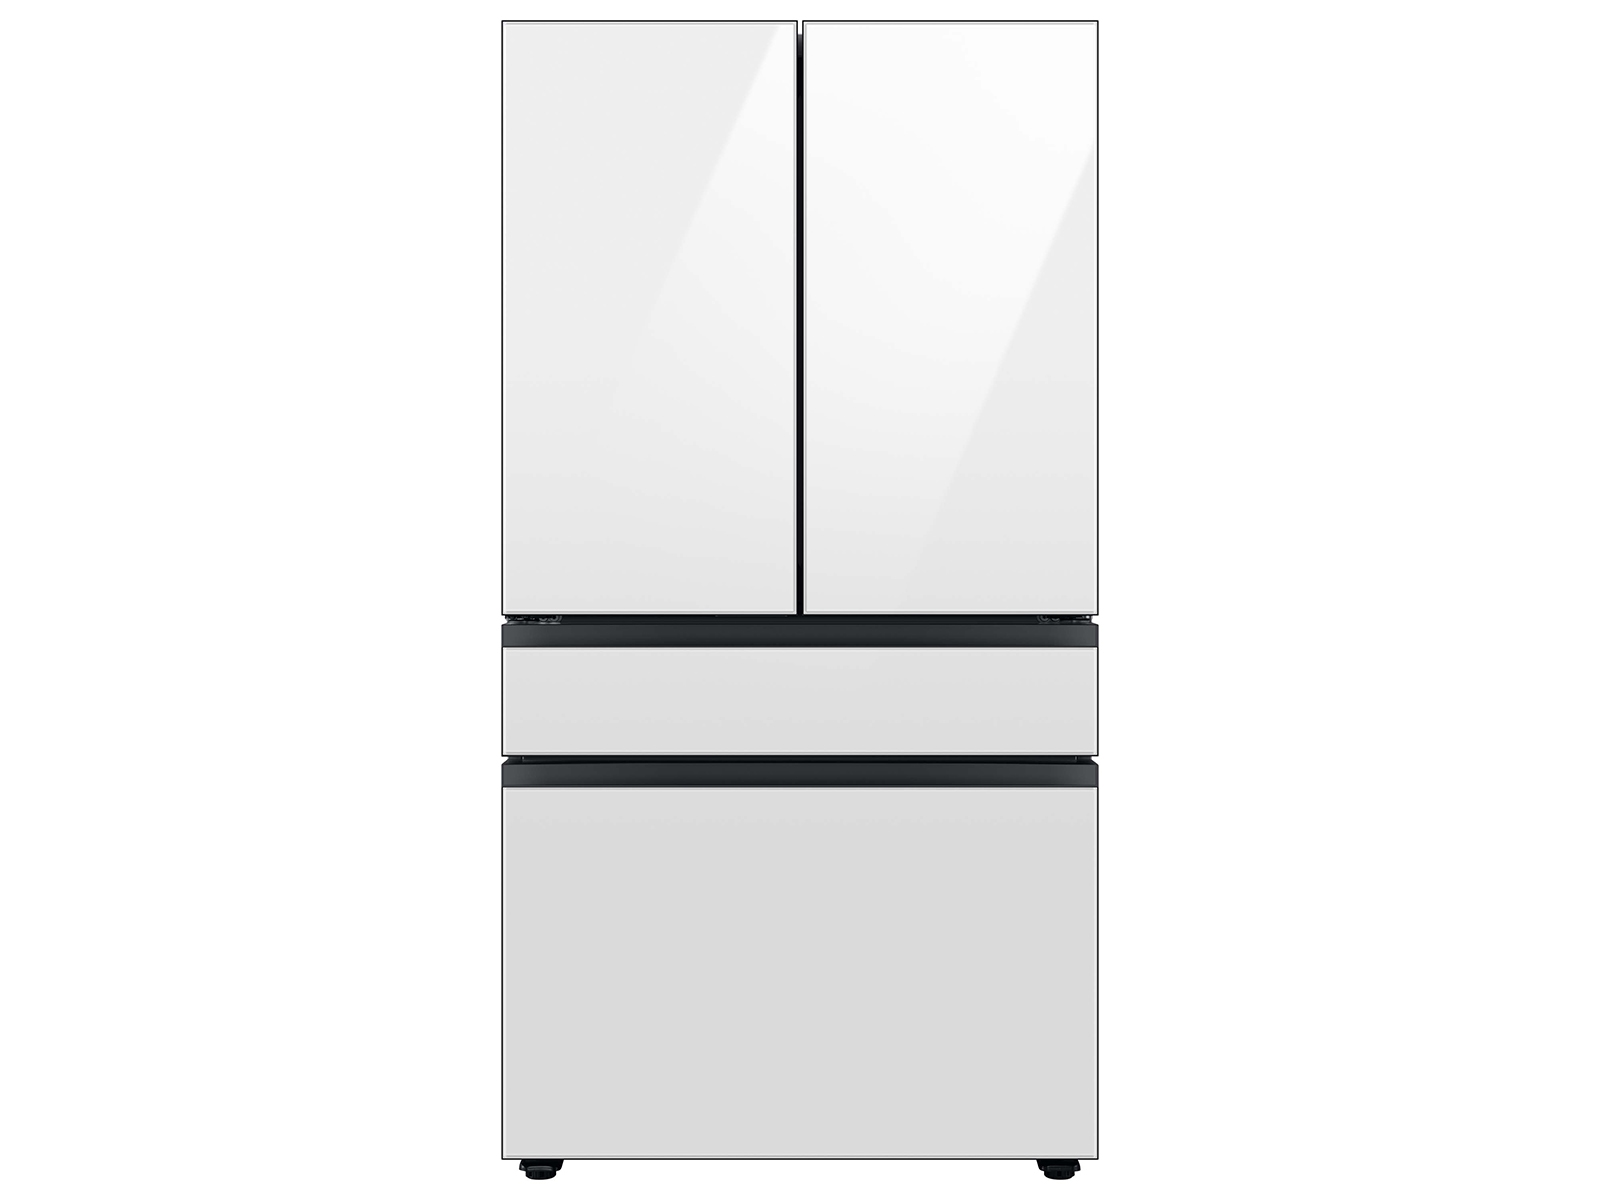 Samsung BESPOKE 4-Door French Door Refrigerator (29 Cu. ft.) with Beverage Center in Stainless Steel